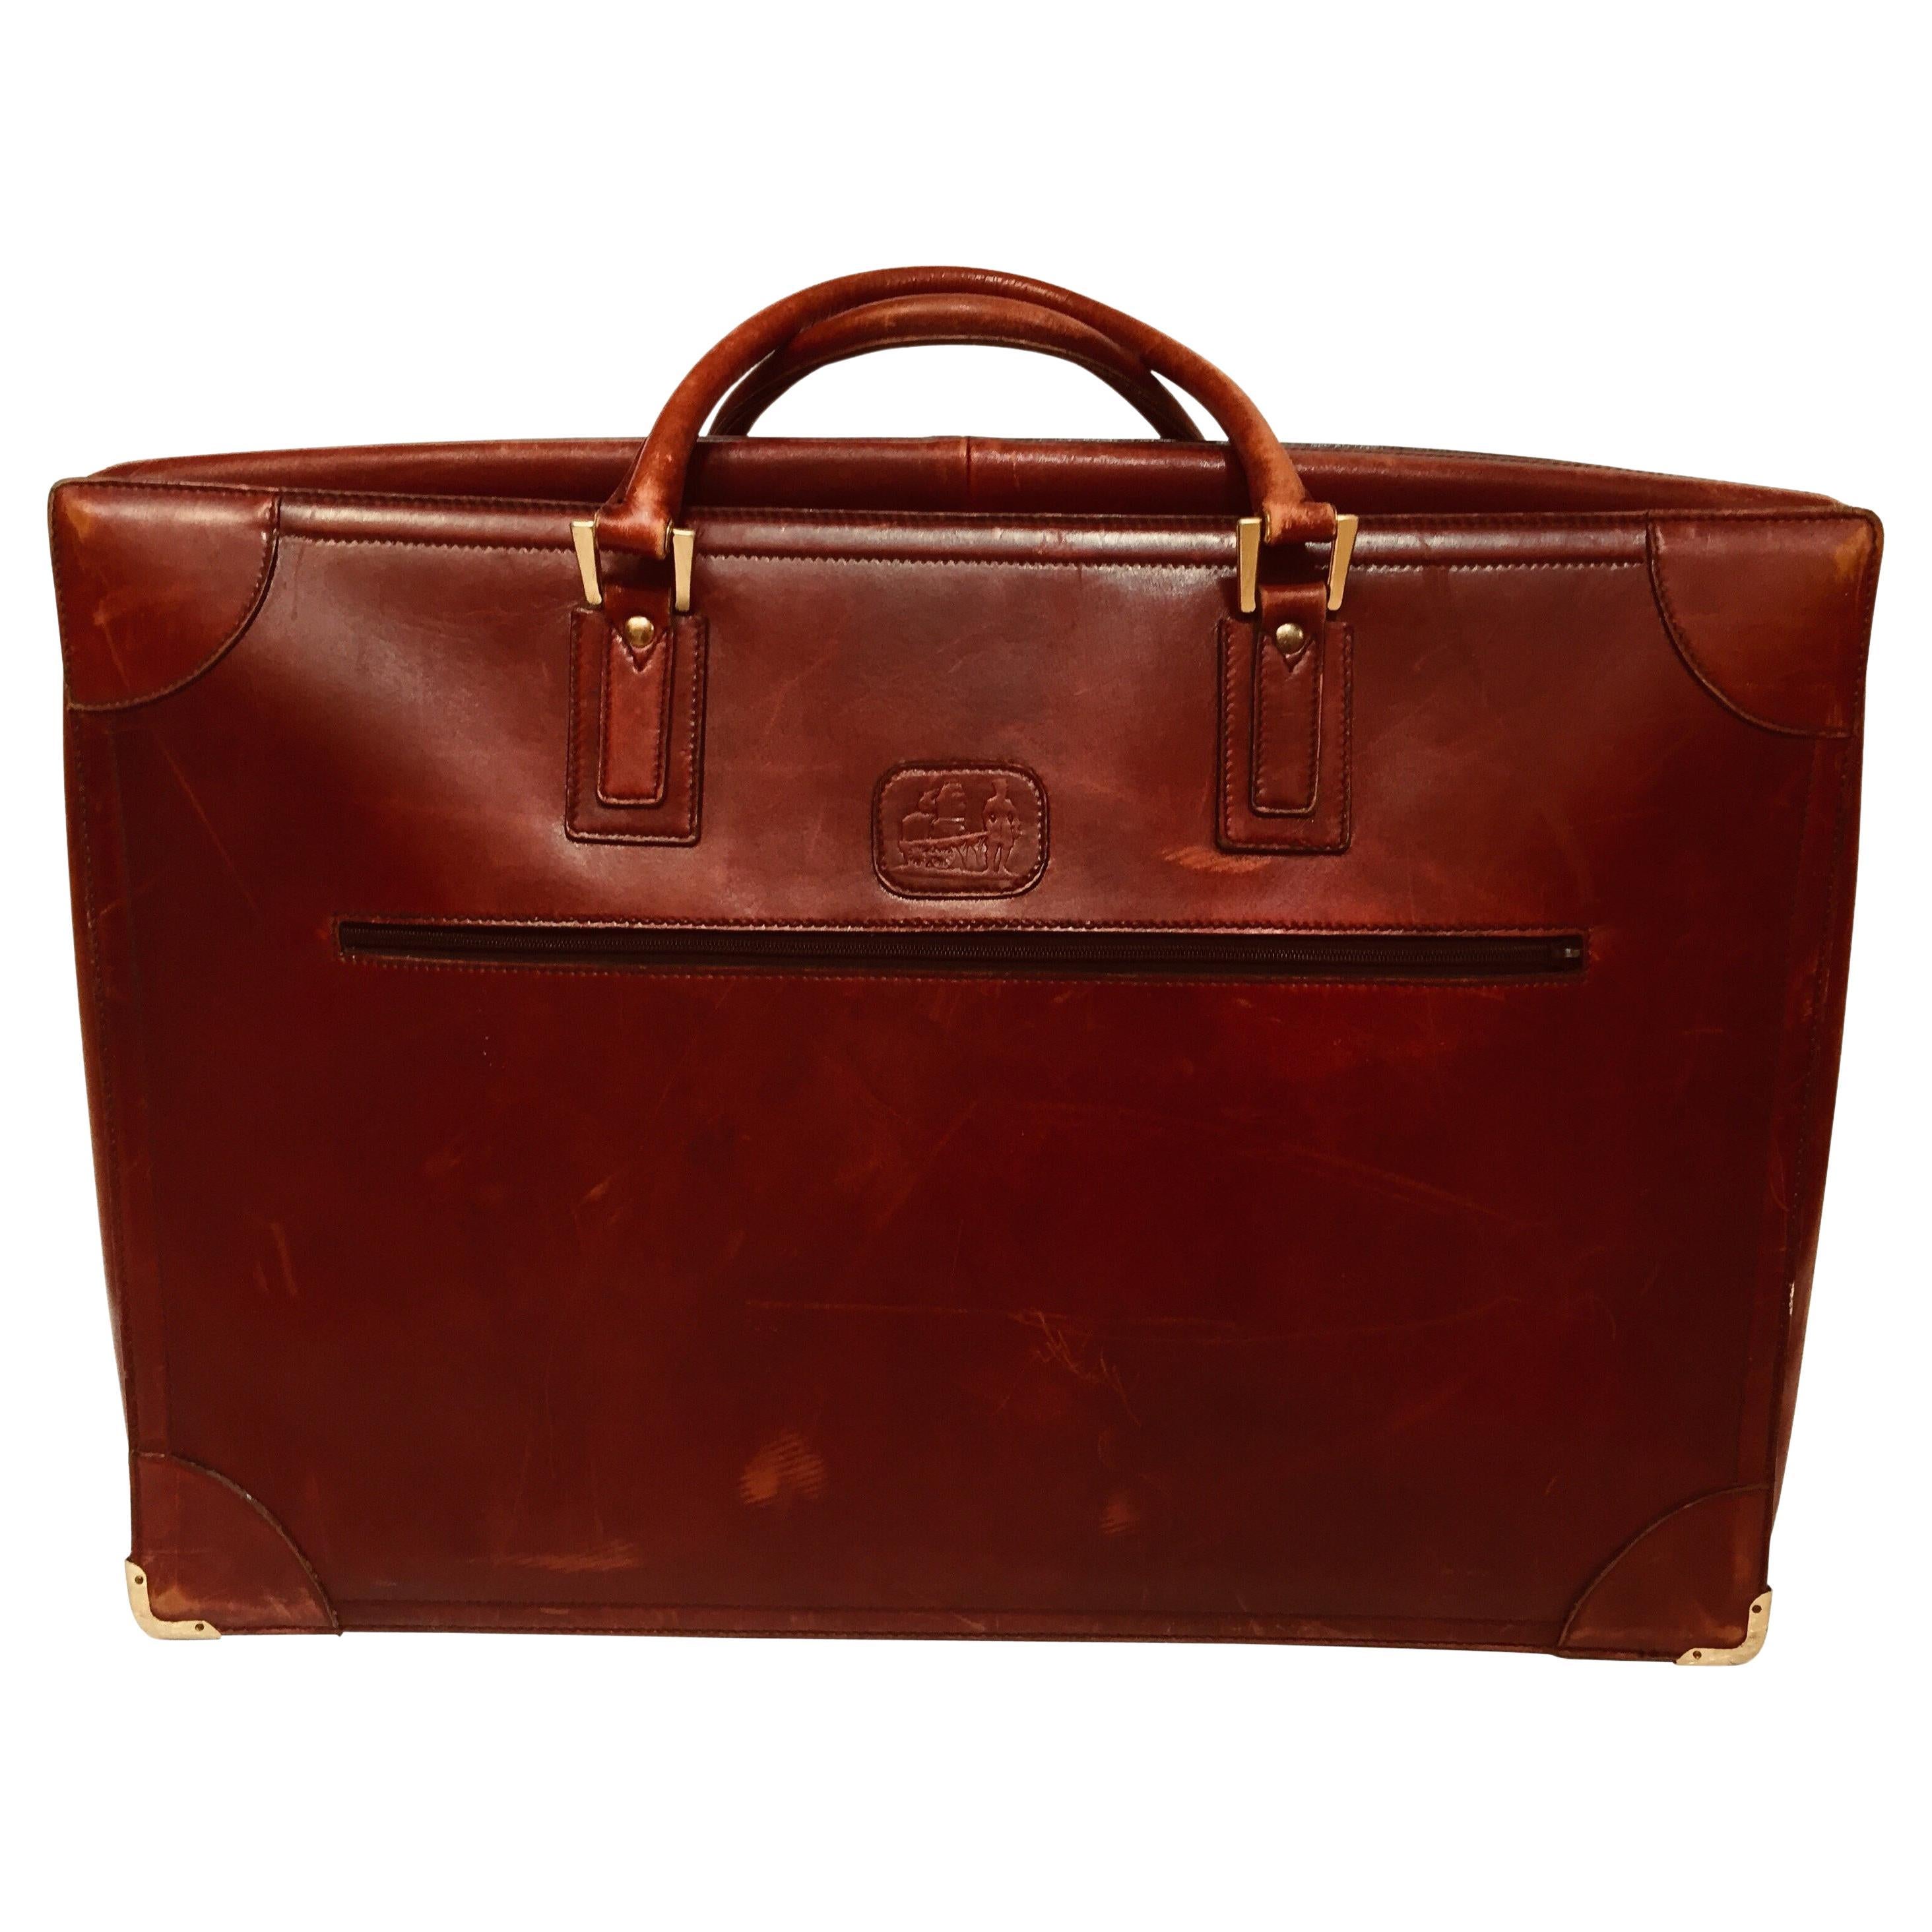 Vintage Leather Suitcase "La Bagagerie Paris" Burgundy Bordeaux Luggage For Sale